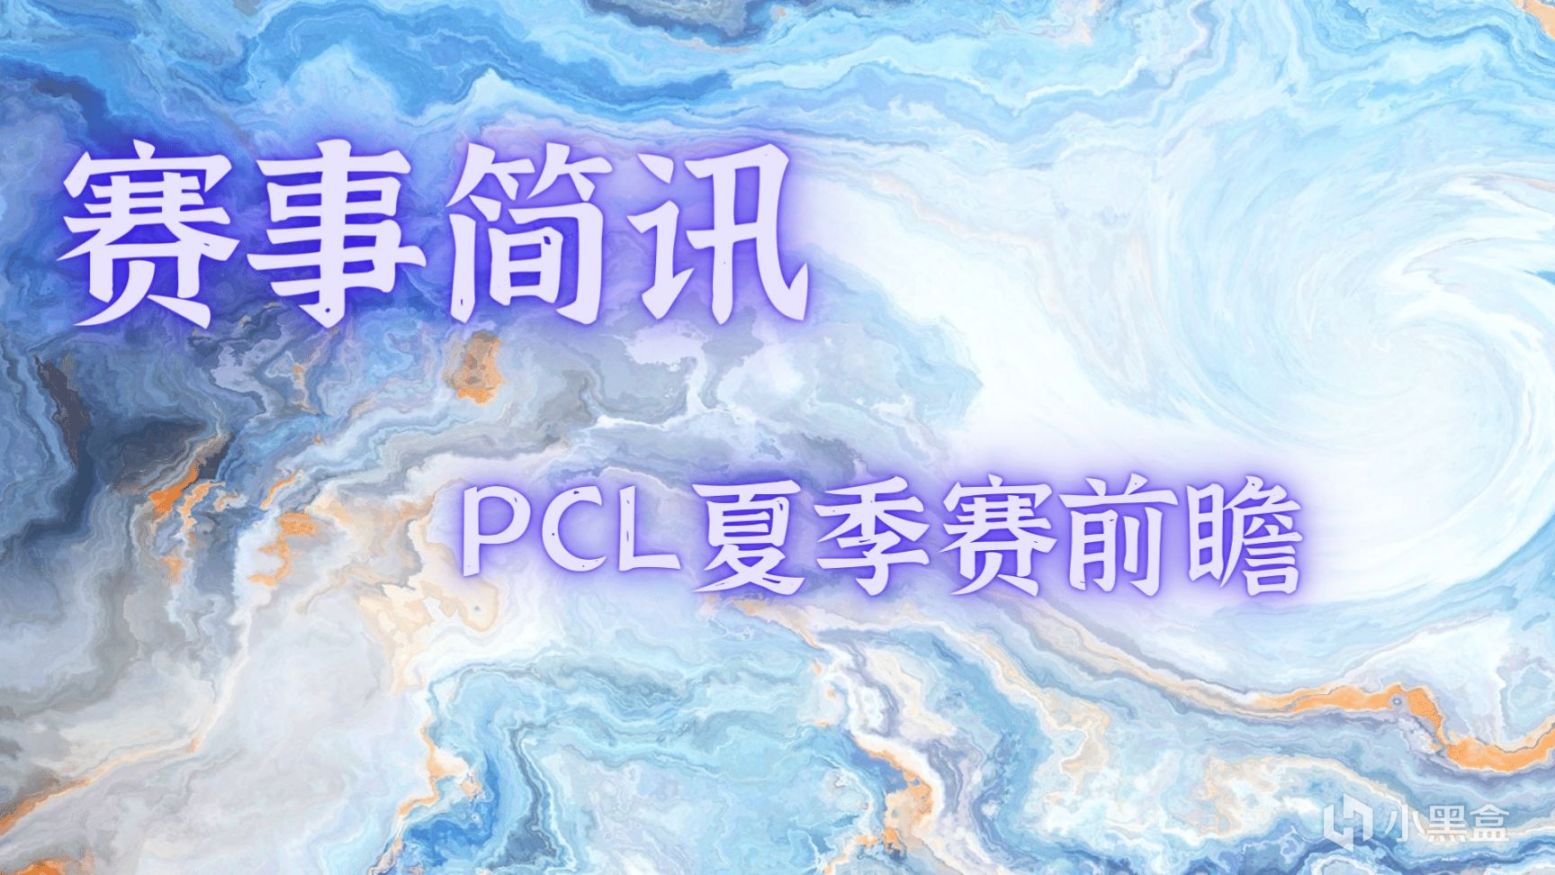 【賽事簡訊】PCL夏季賽比賽時間更新，擬線下賽形式開展，PGC積分翻倍！-第0張